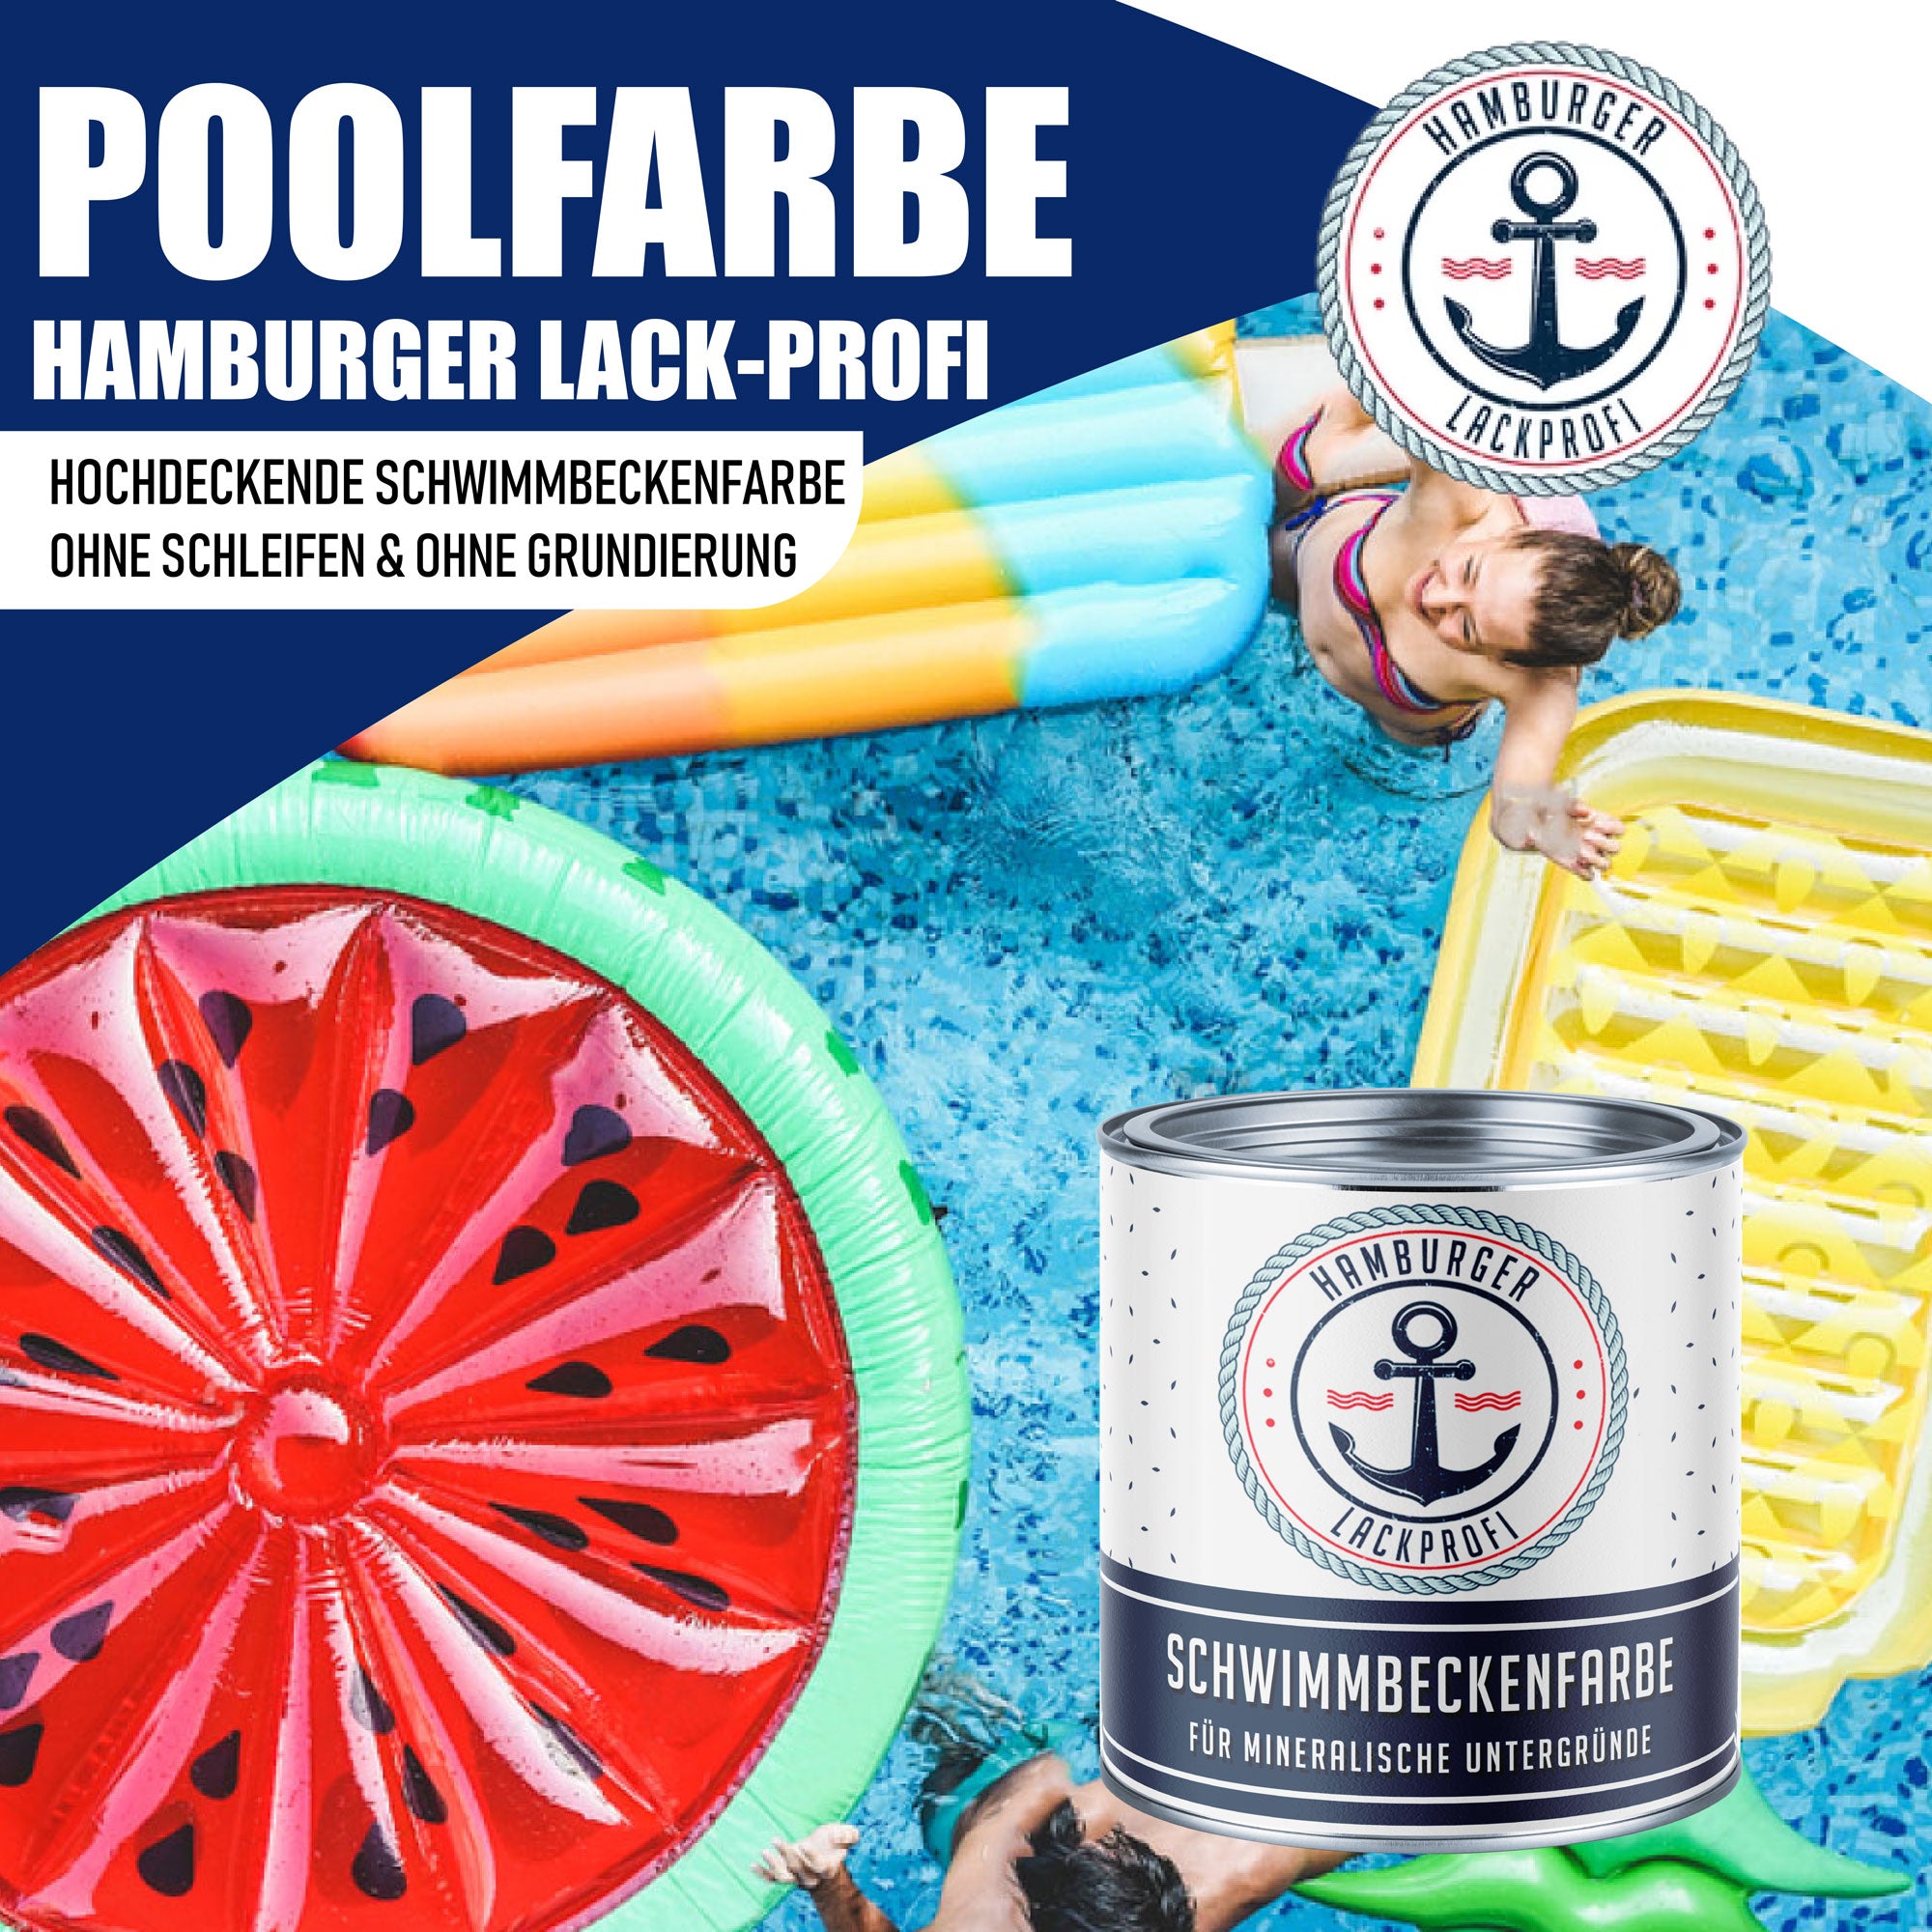 Hamburger Lack-Profi Schwimmbeckenfarbe Lachsorange RAL 2012 - hochdeckende Poolfarbe